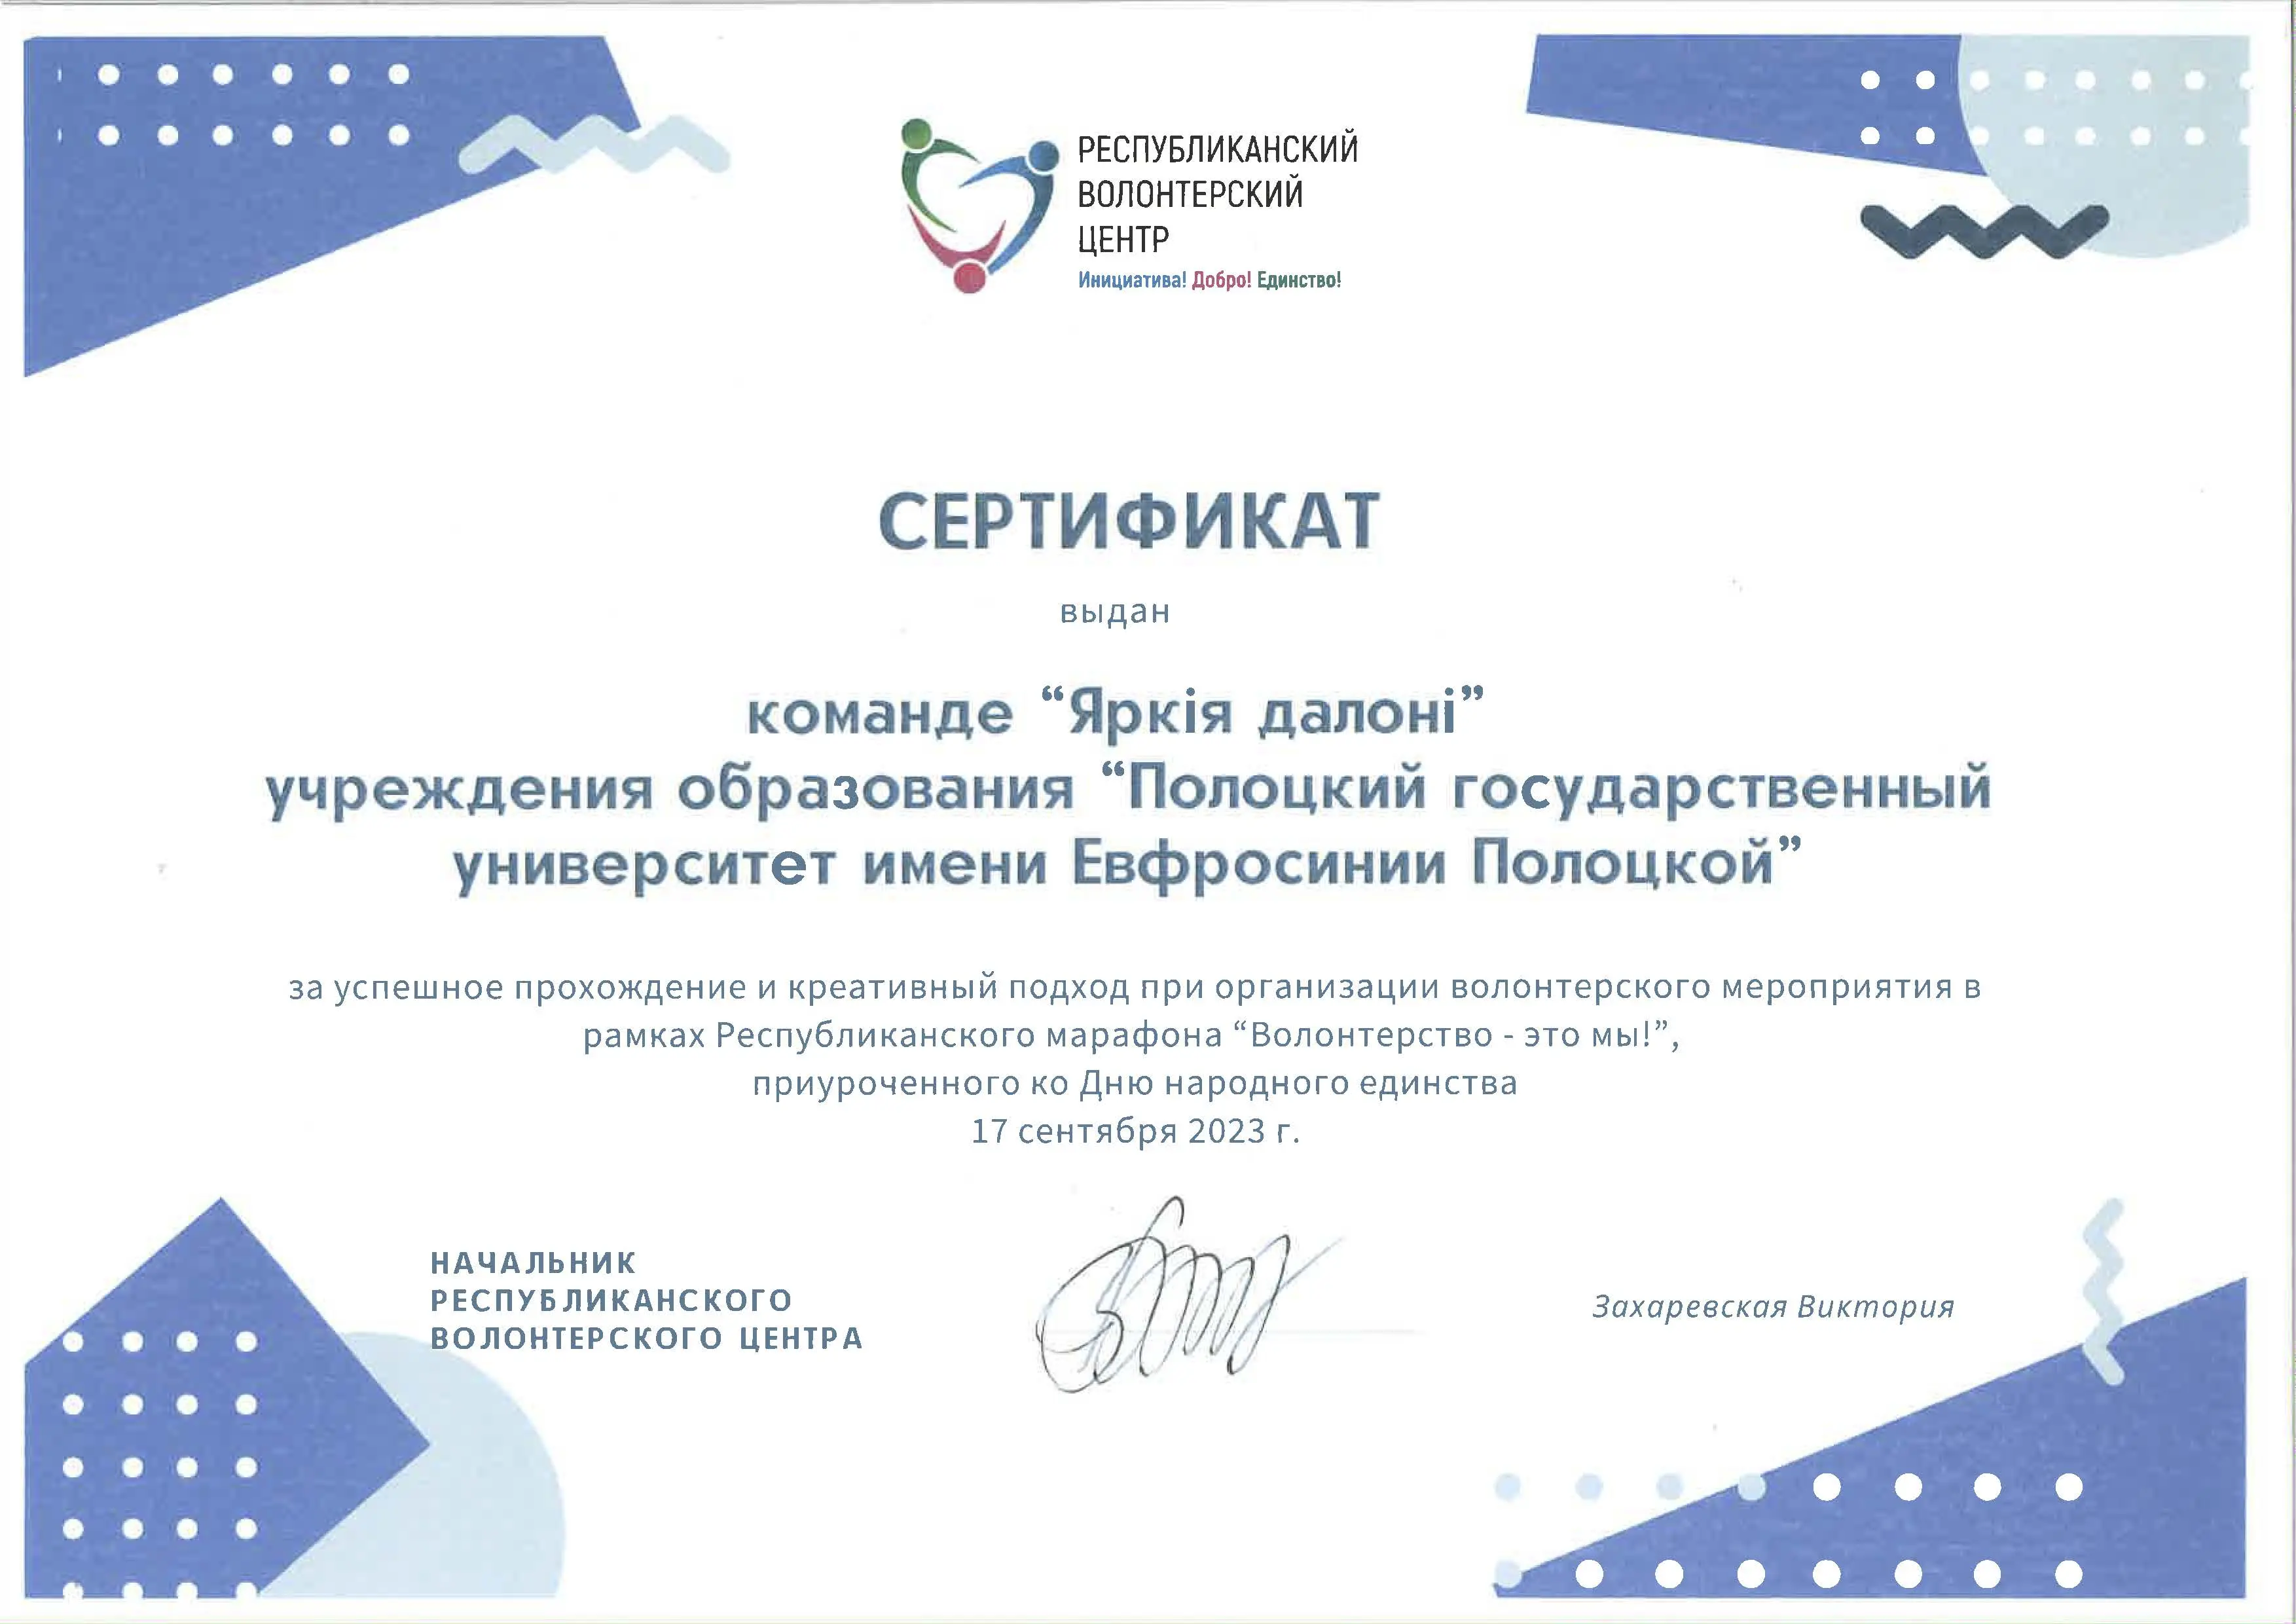 Сертификат за успешное прохождение и креативный подход